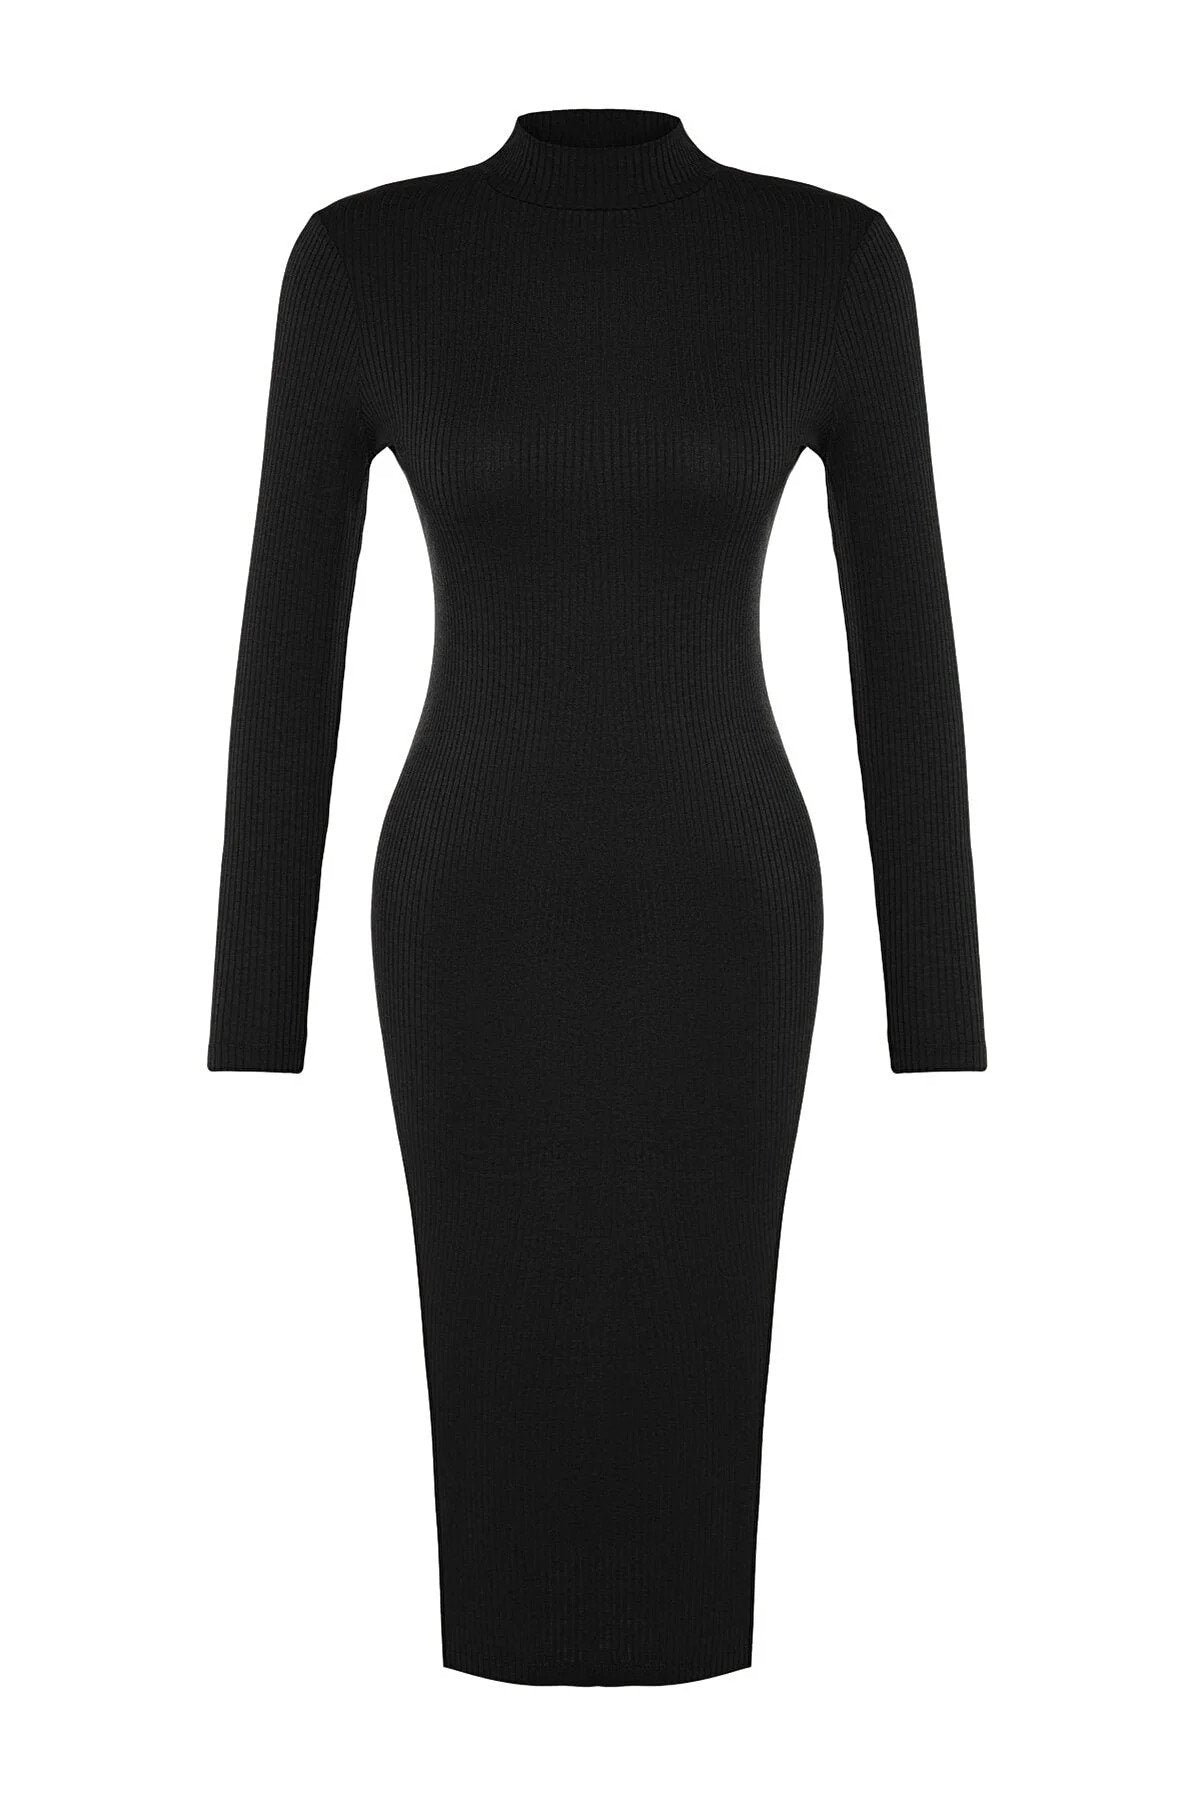 Trendyol Black Bodycon Stylish Dress